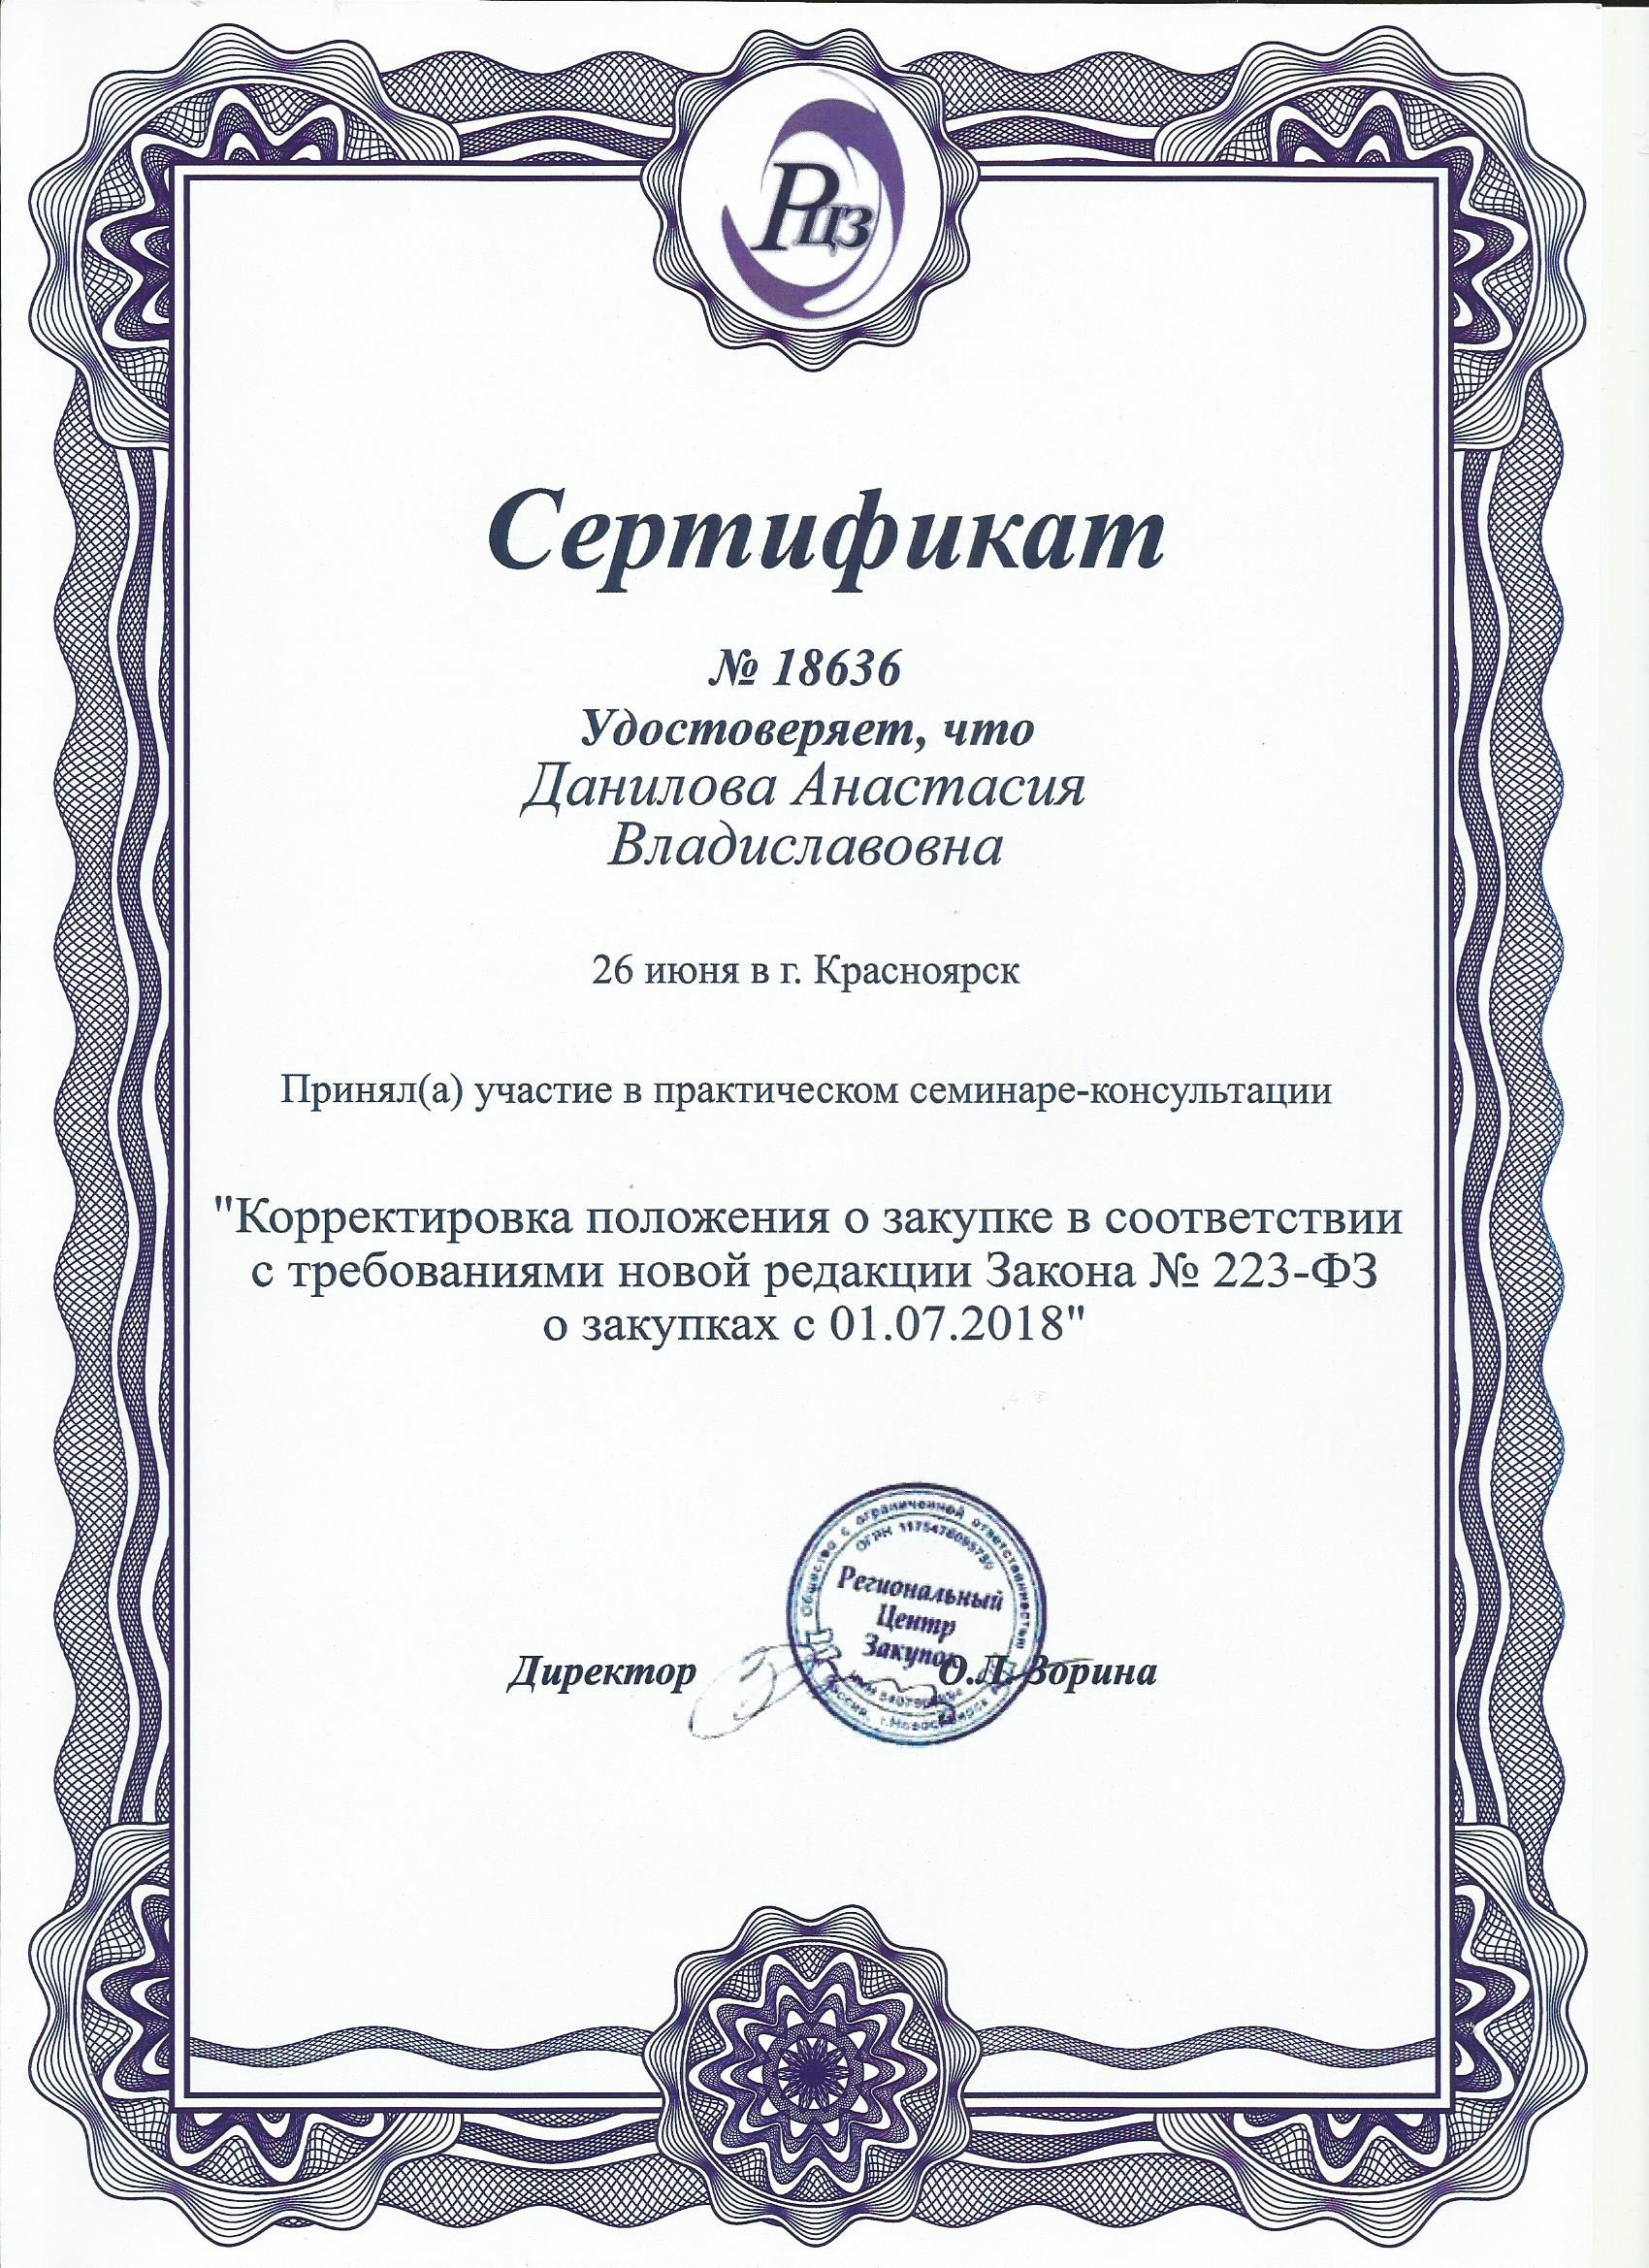 Сертификат Регионального центра закупок